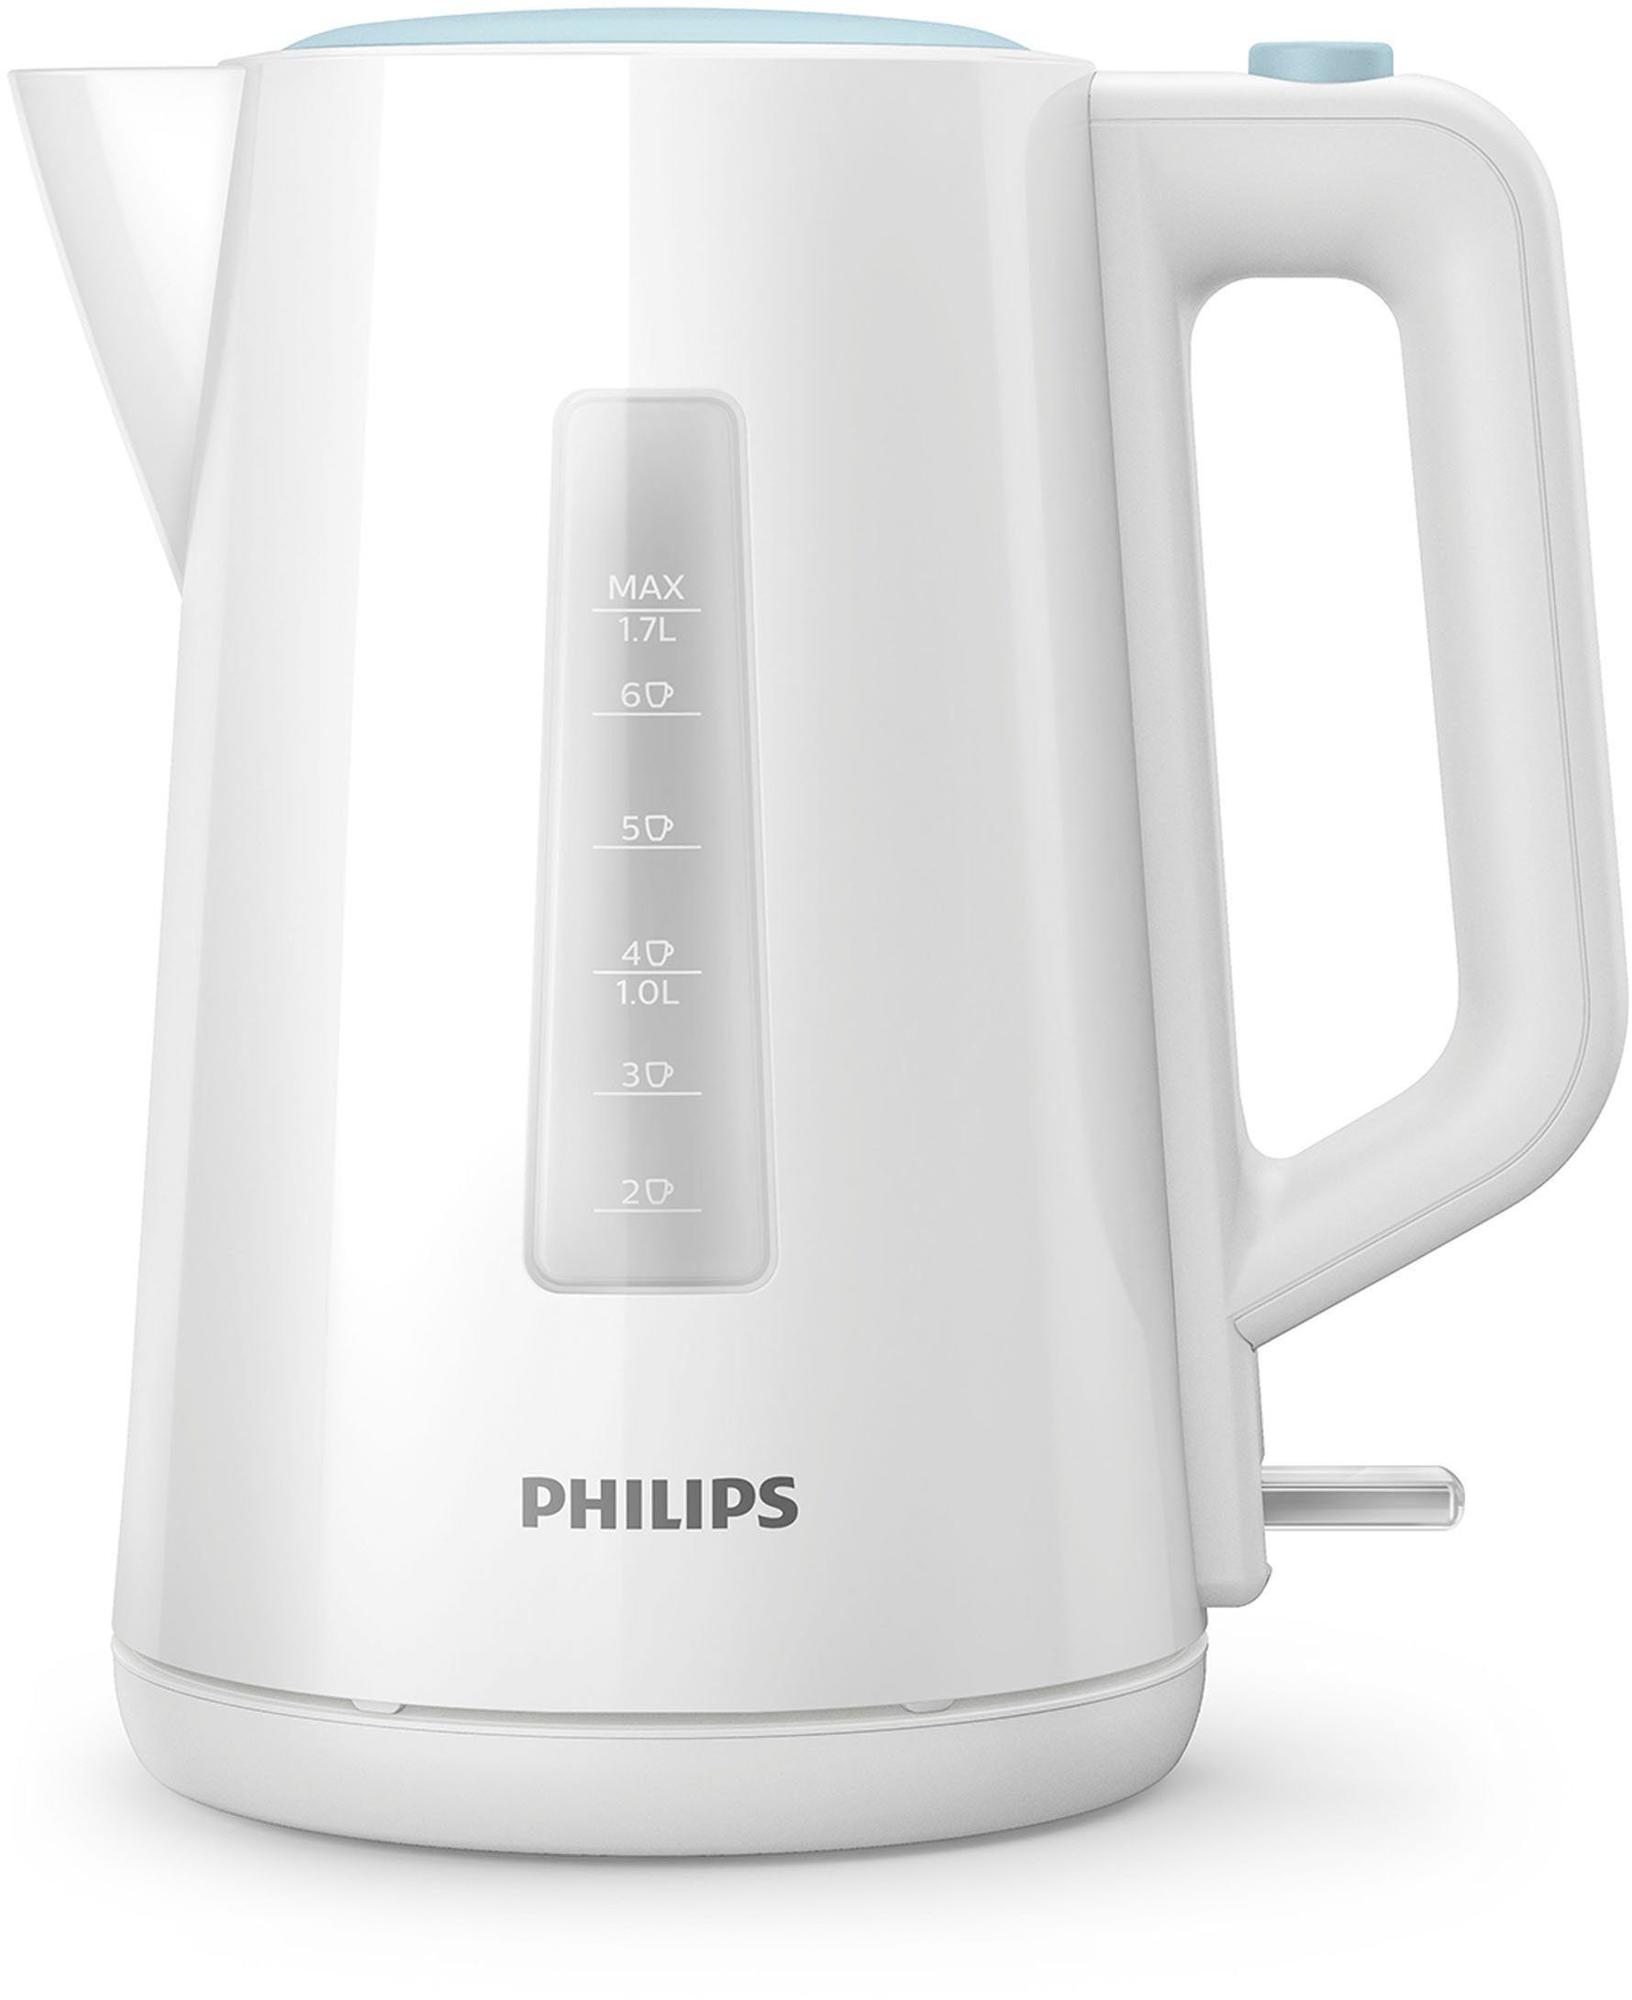 Philips HD9318/00 Wasserkocher